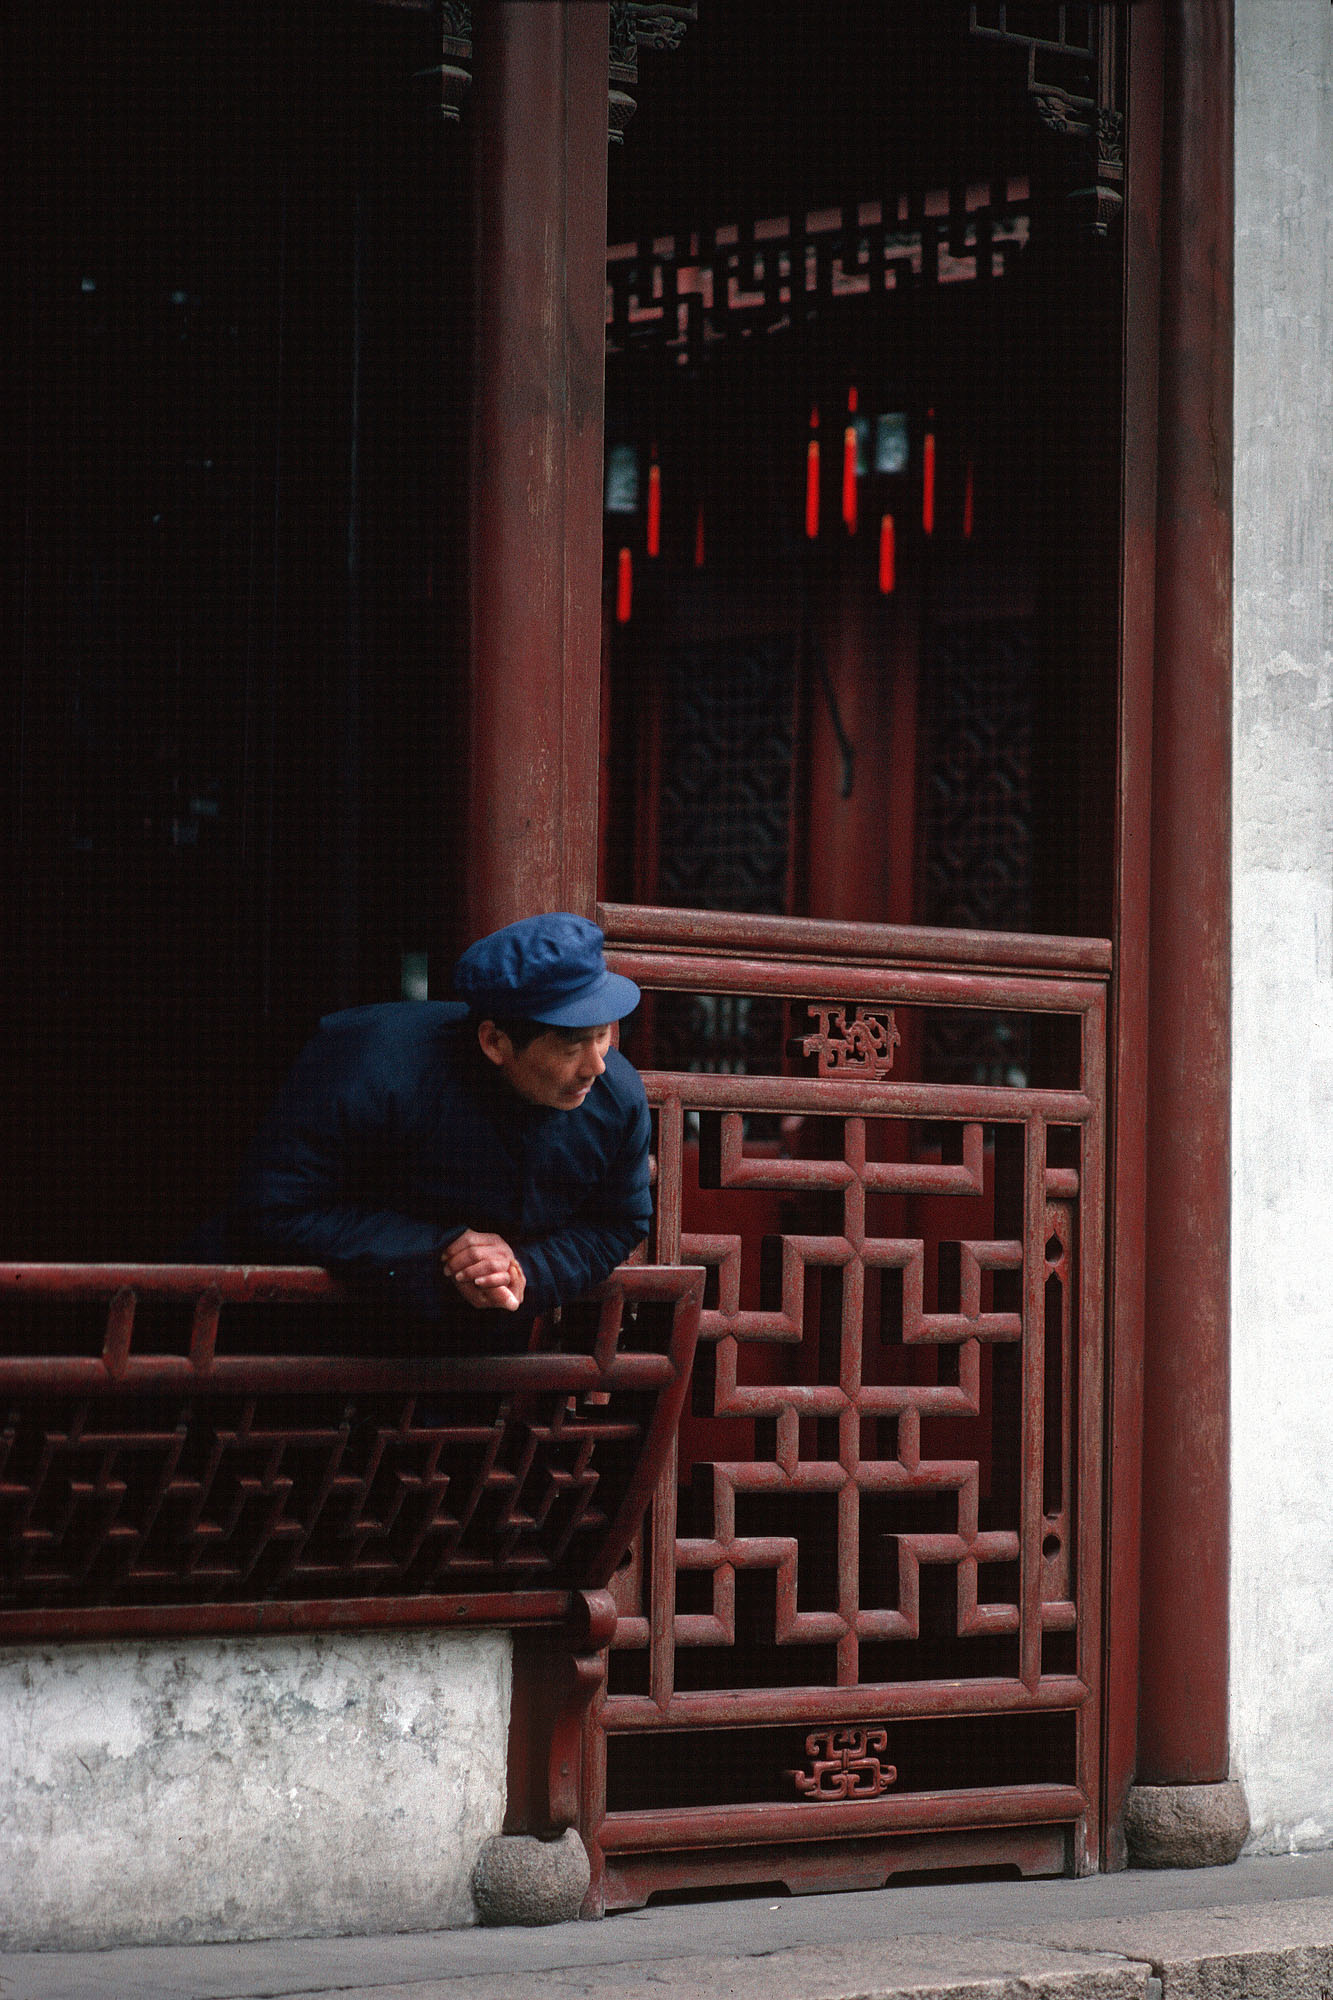 bill-hocker-window-seat-shanghai-china-1988